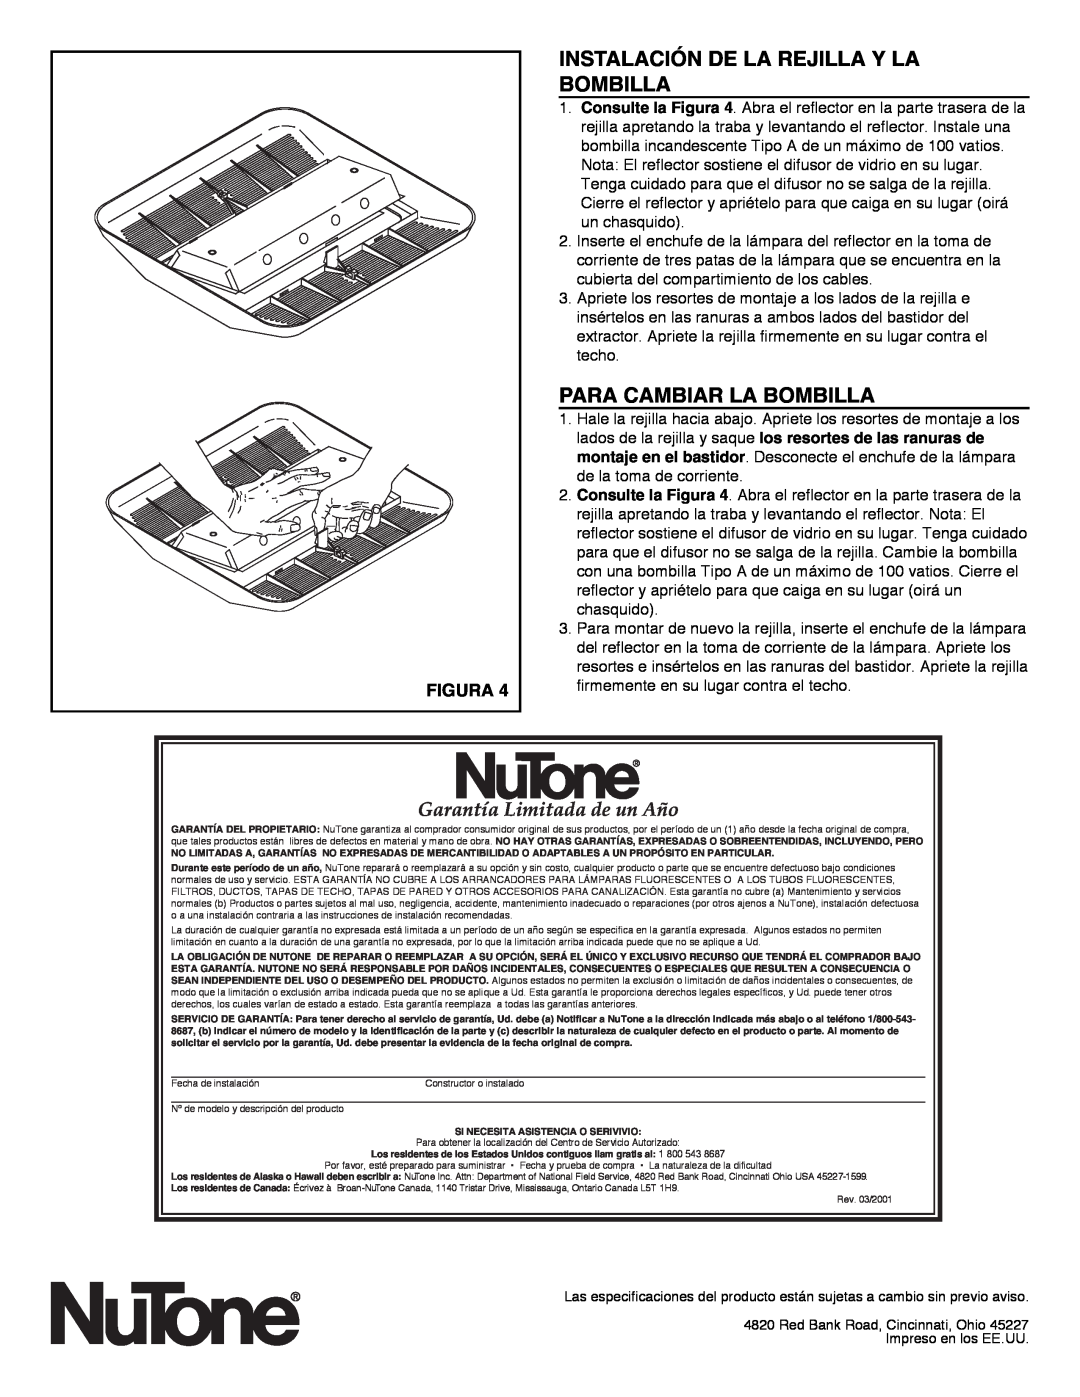 NuTone LS100L Instalación De La Rejilla Y La Bombilla, Para Cambiar La Bombilla, Garantía Limitada de un Año, Figura 